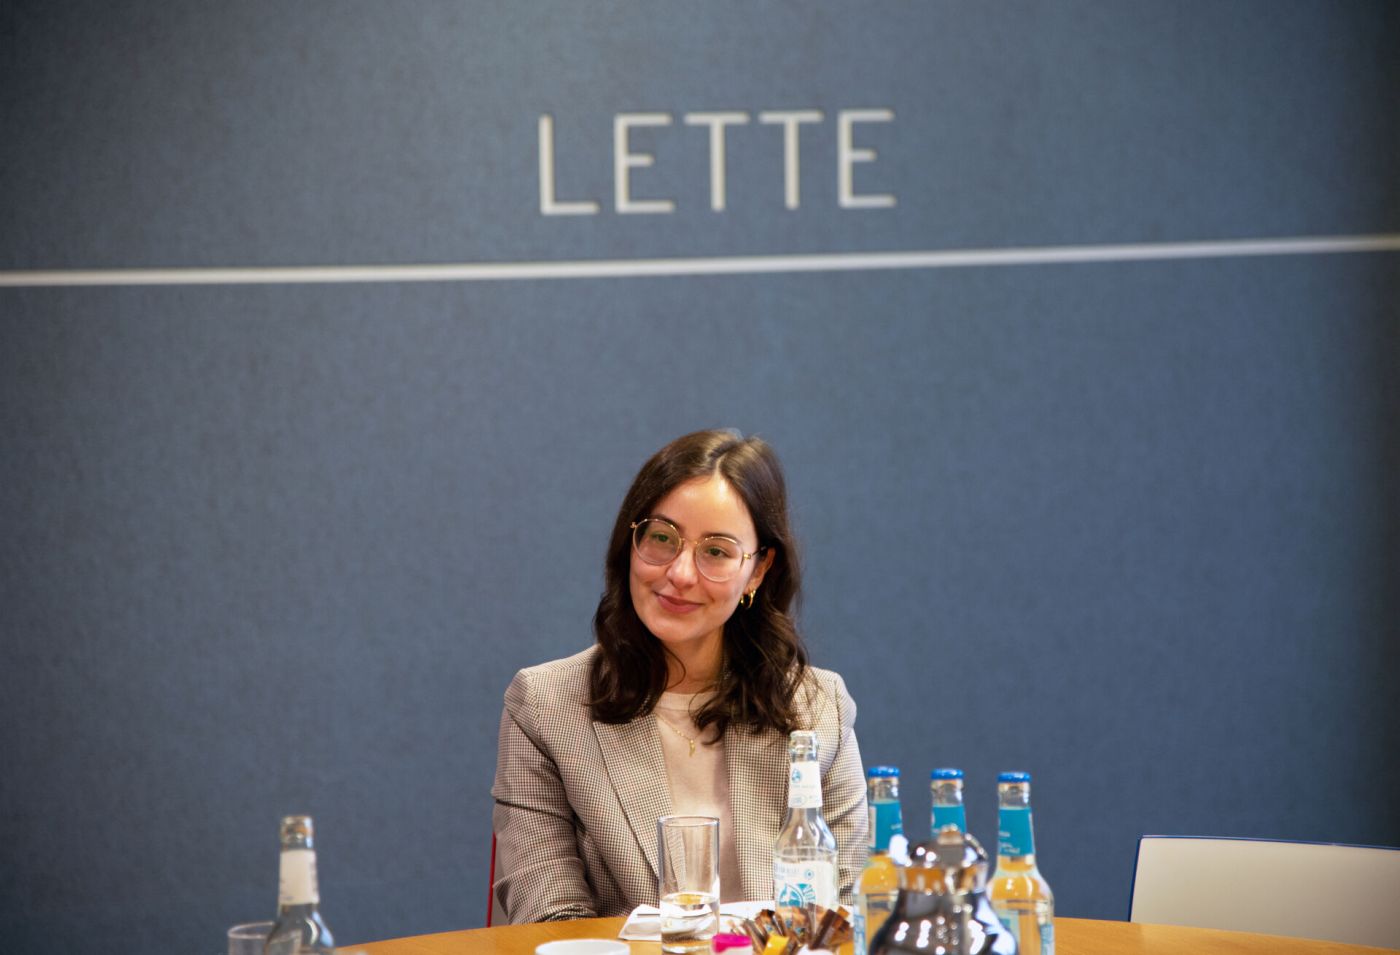 Eine junge Frau sitzt an einem Tisch. Hinter ihr ist eine blaue Wand mit der Aufschrift "Lette" zu sehen.  